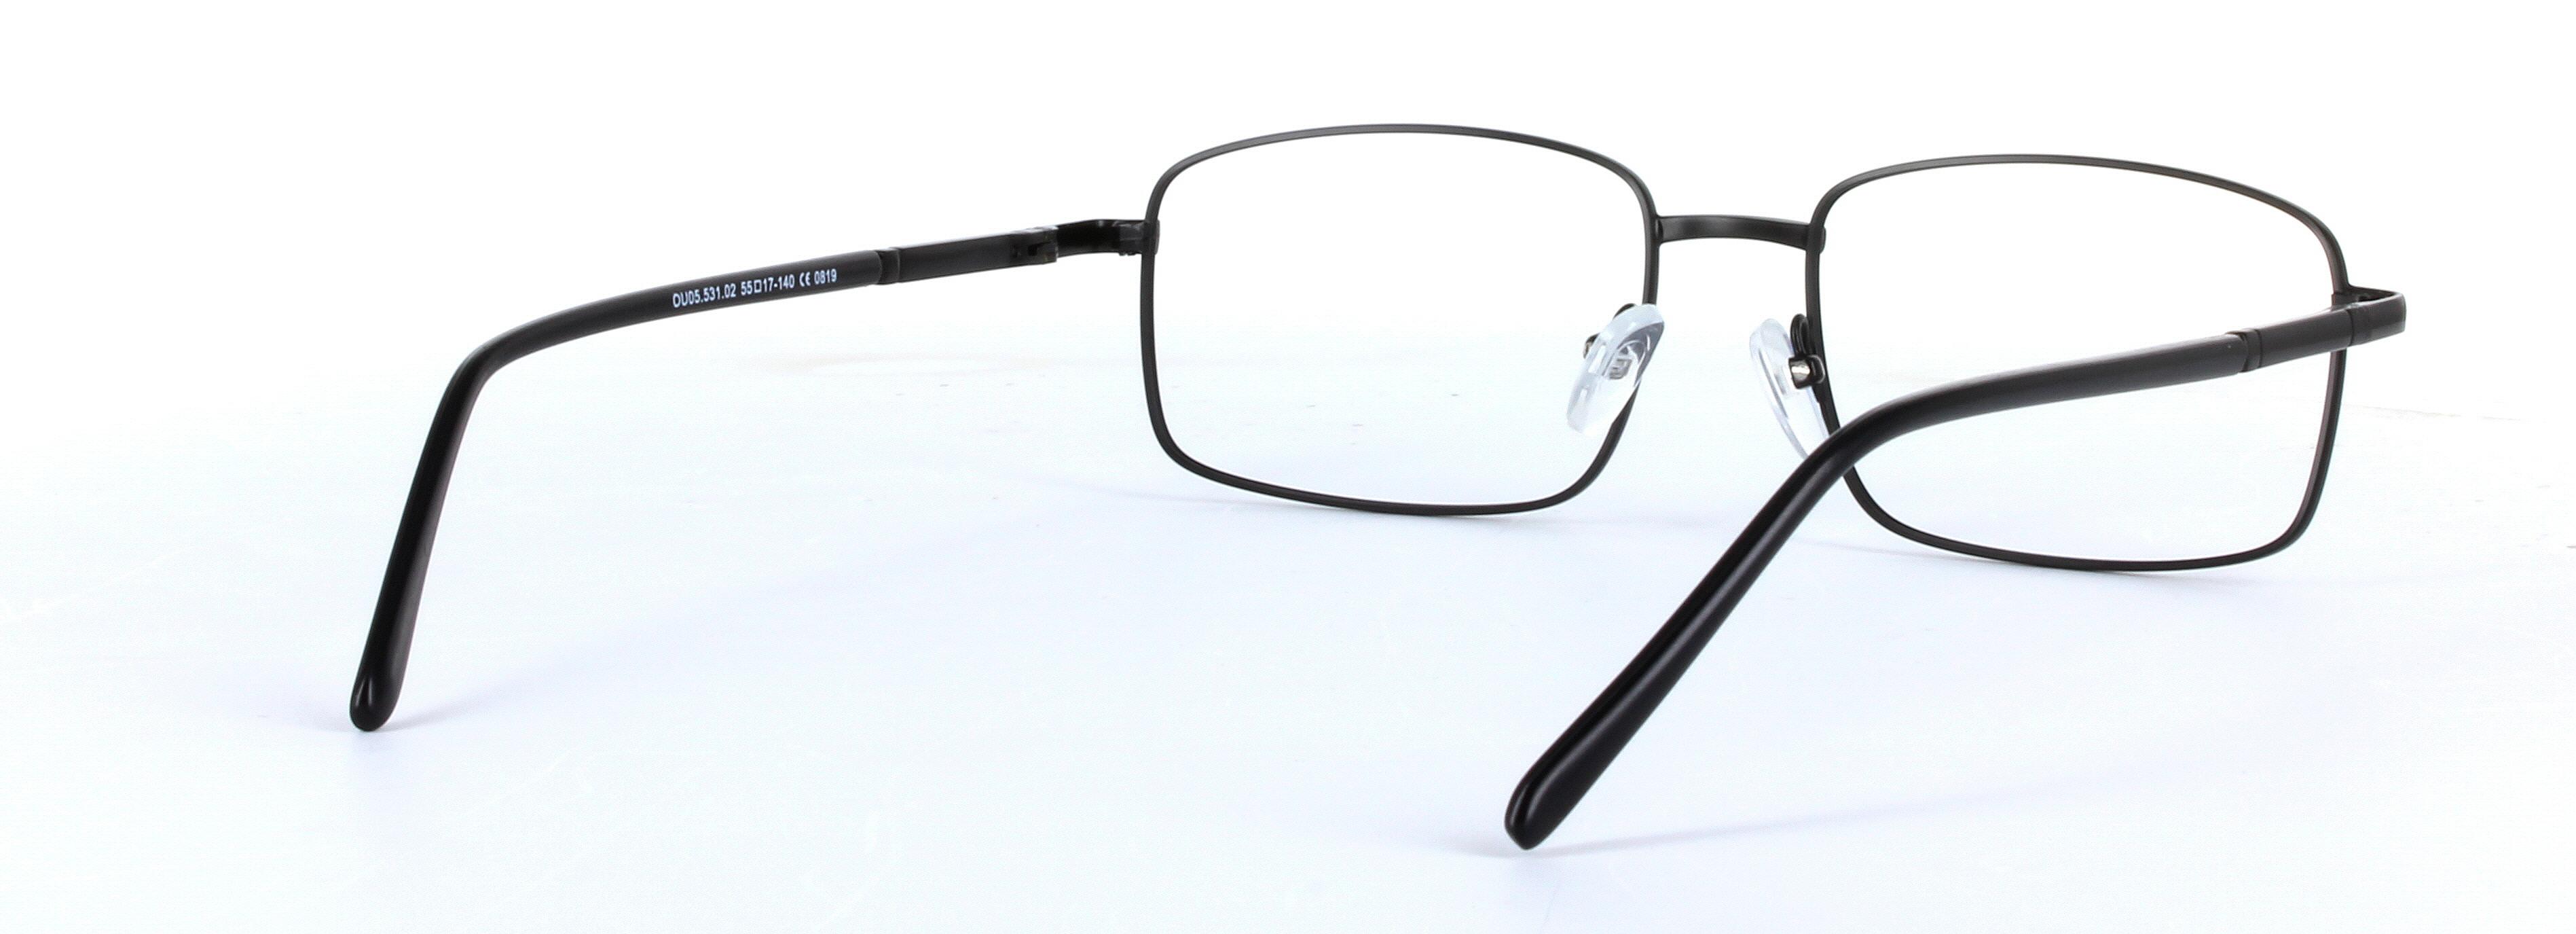 Jasper Black Full Rim Rectangular Metal Glasses - Image View 4